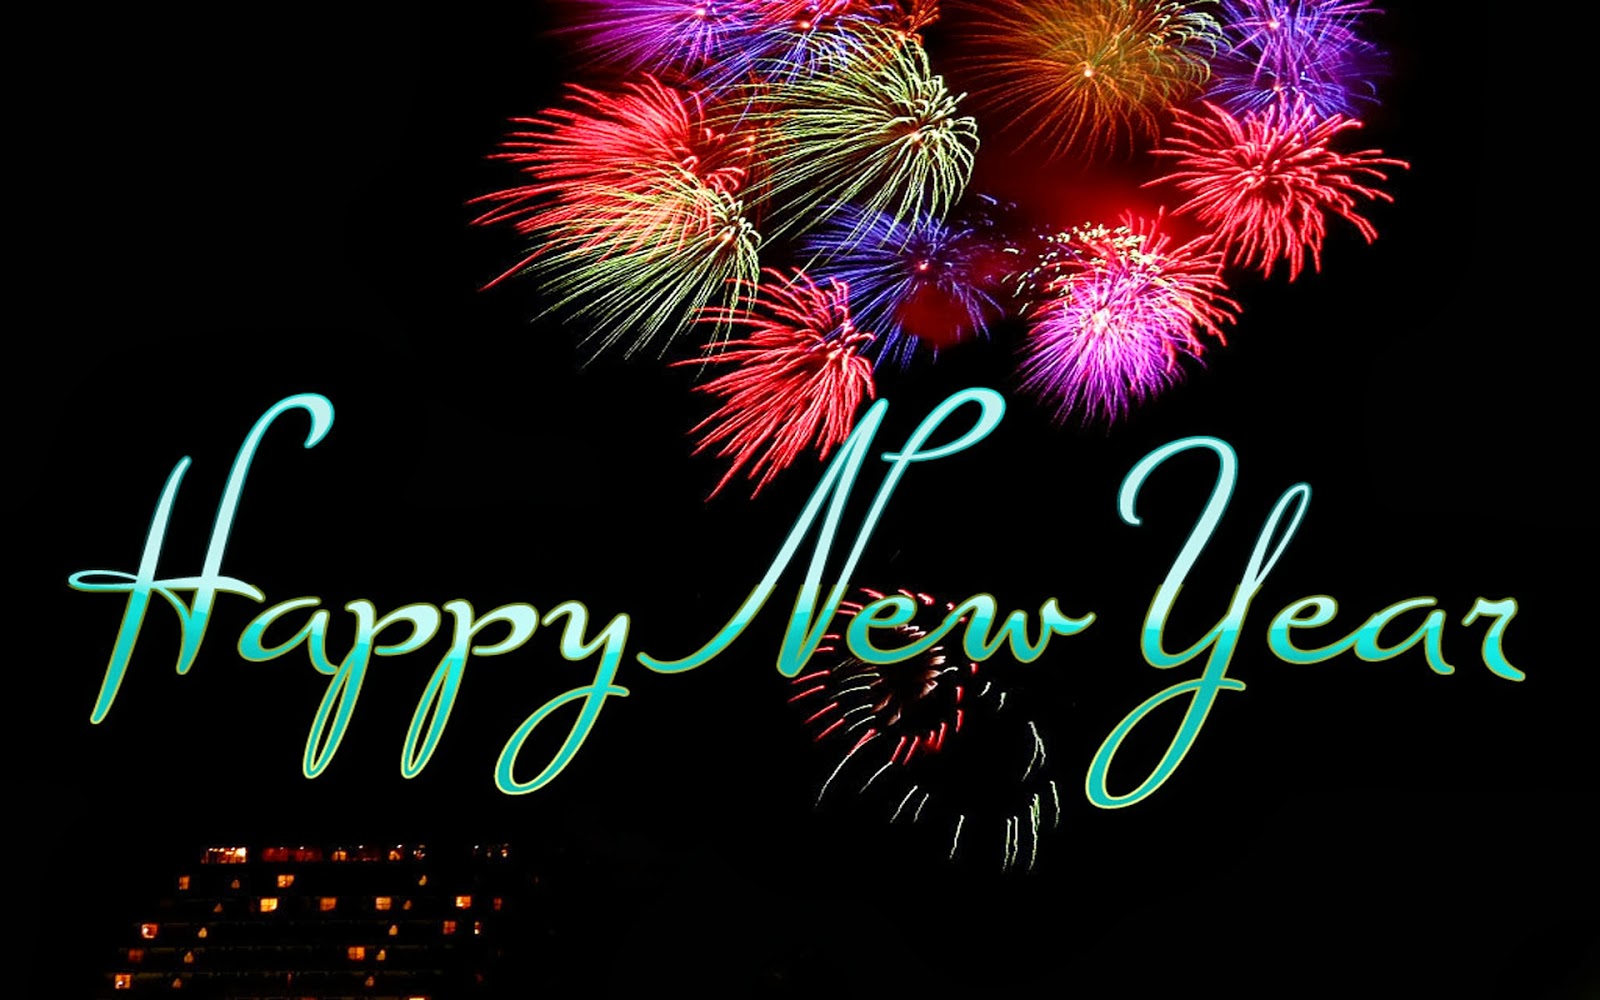 nuevos fondos de pantalla gratis,fuegos artificiales,día de año nuevo,texto,año nuevo,fiesta